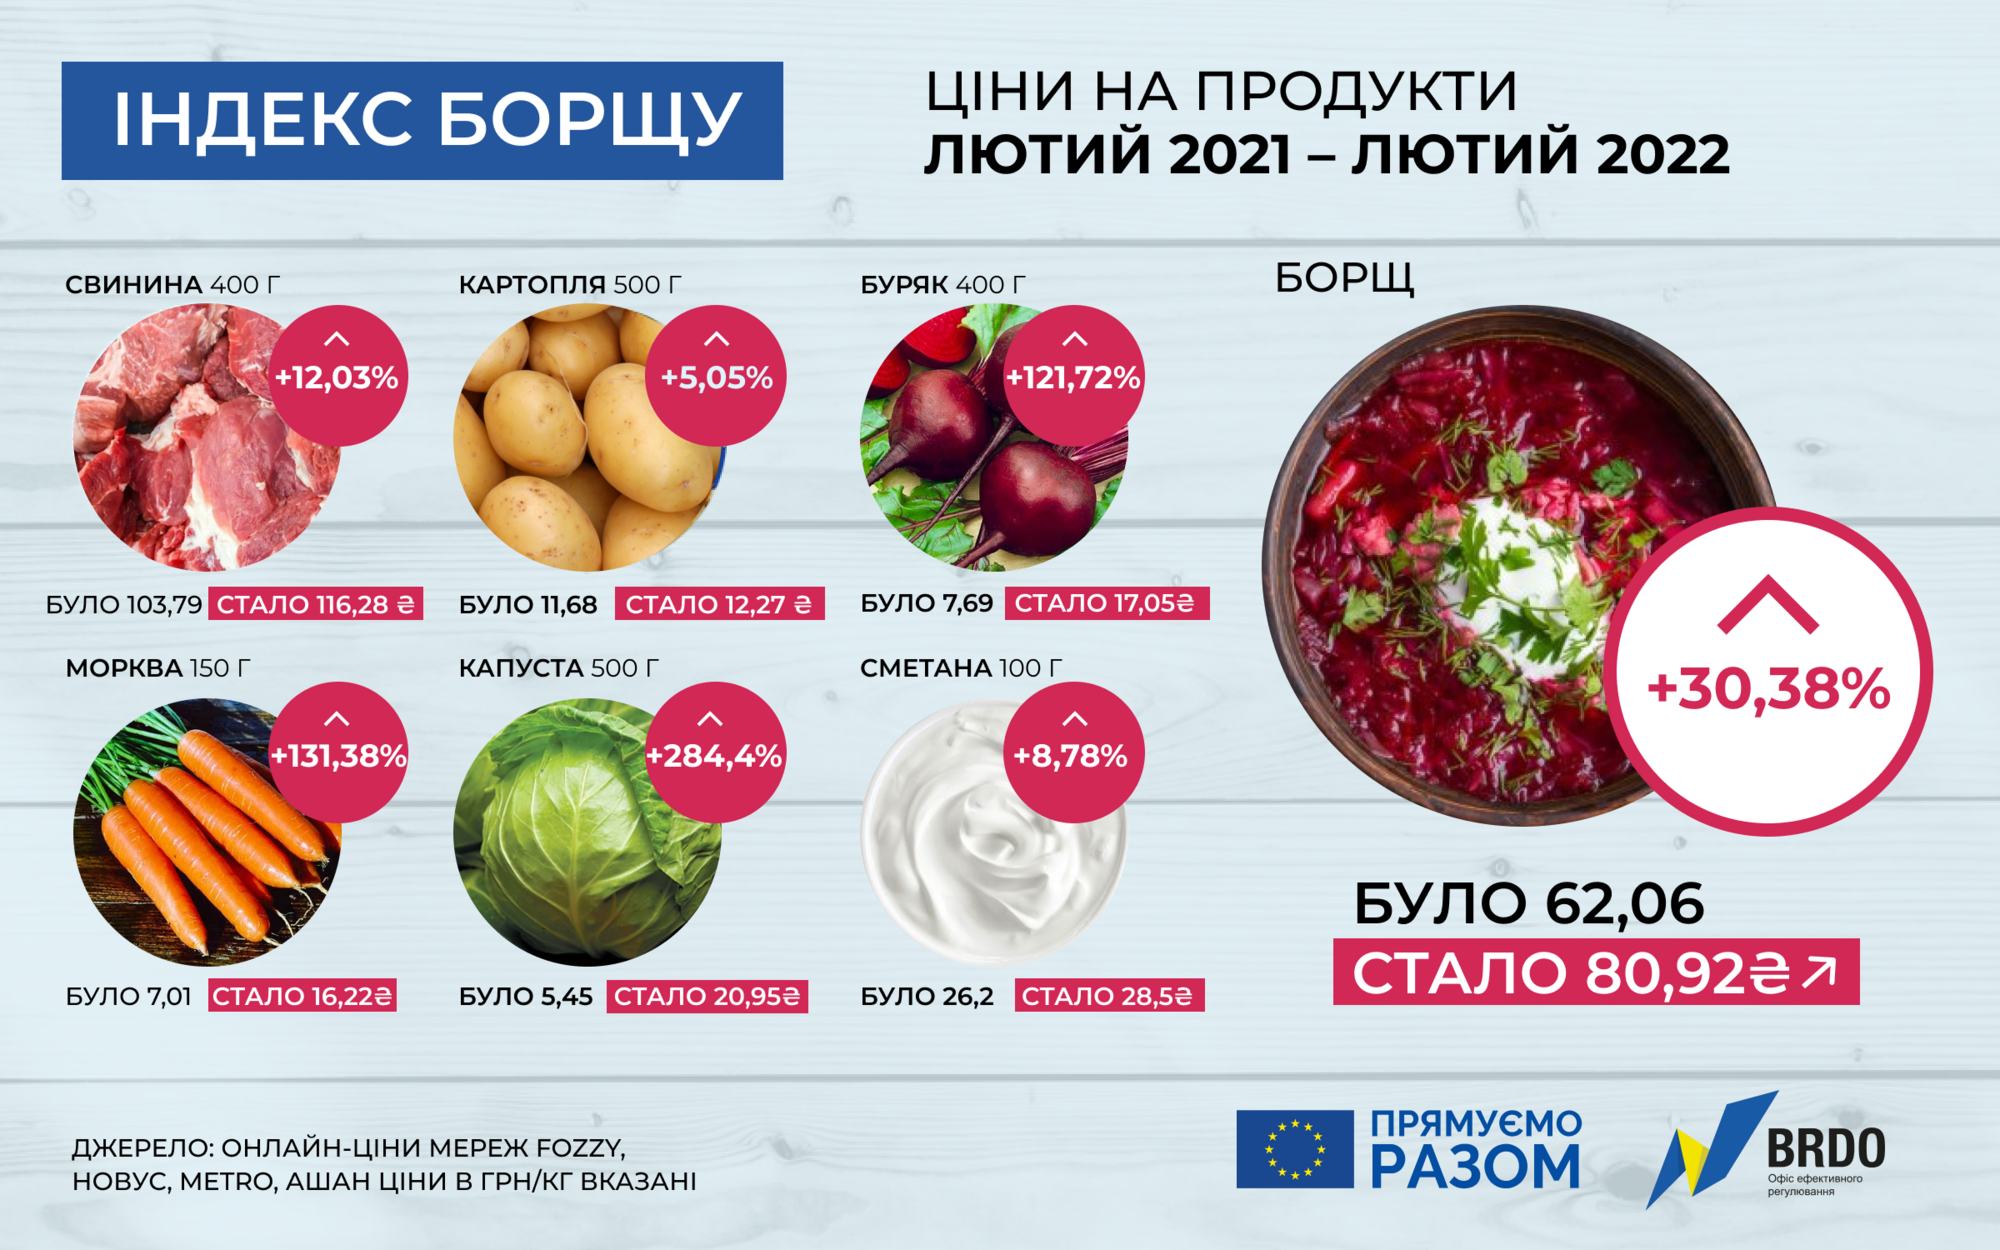 За рік в Україні вартість продуктів для борщу збільшилася на 30,38%, до 80,92 грн/каструлю